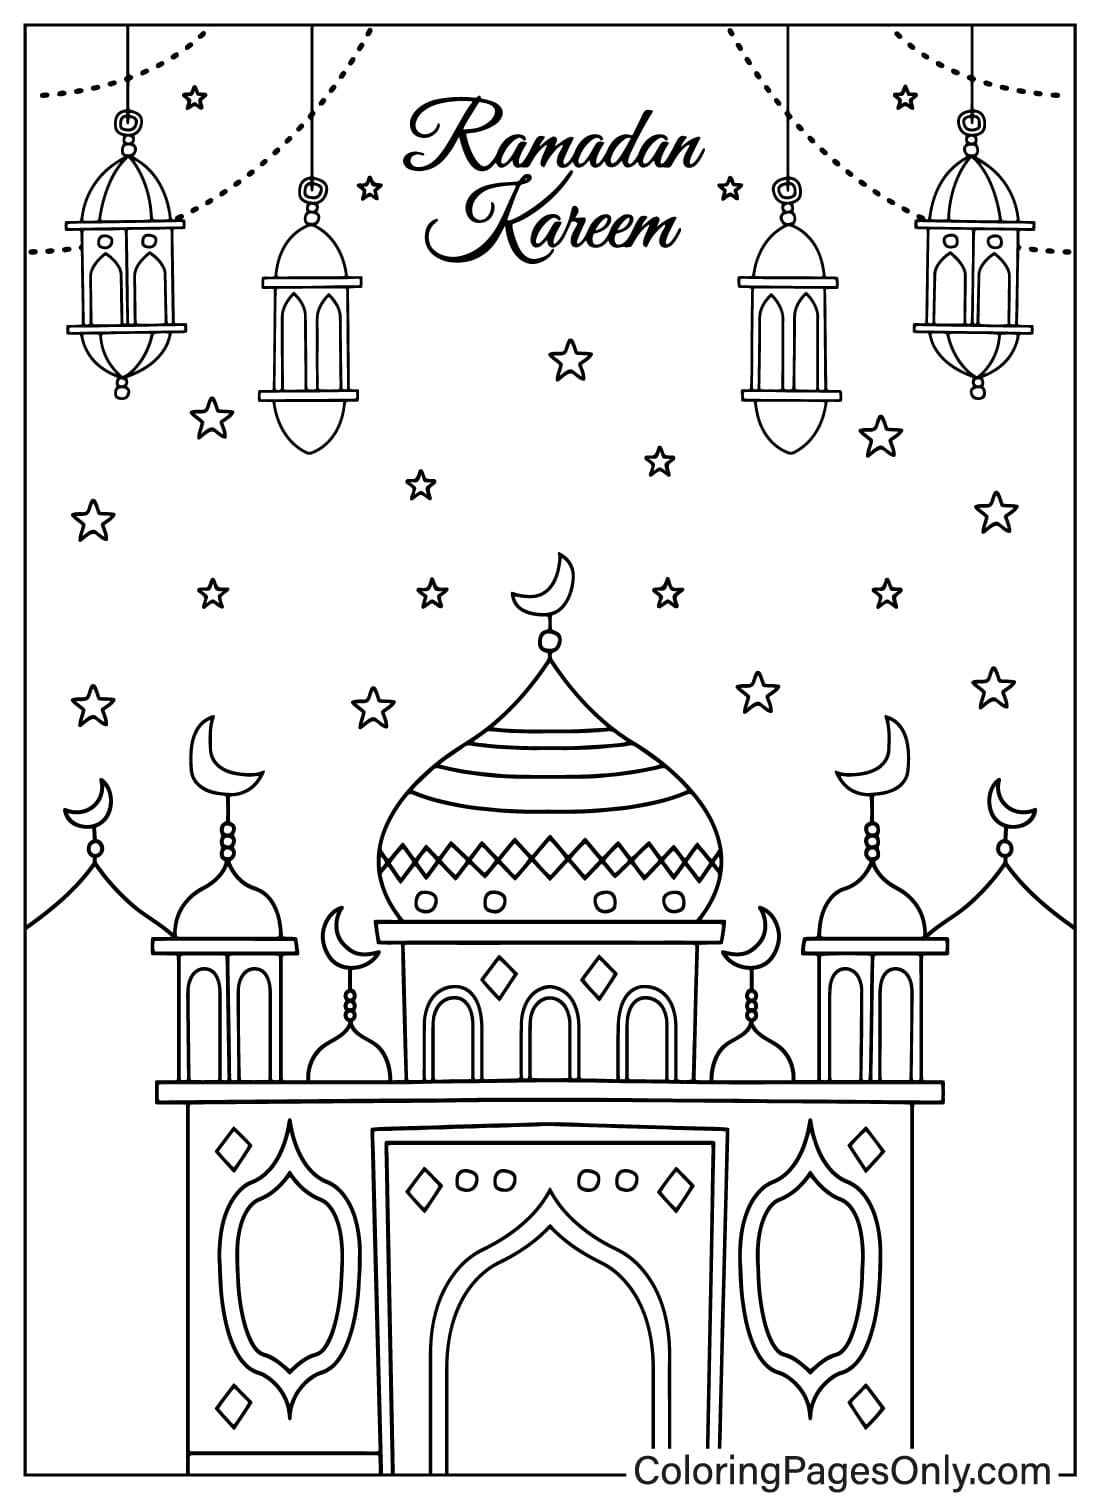 Бесплатная раскраска Рамадан от Рамадан